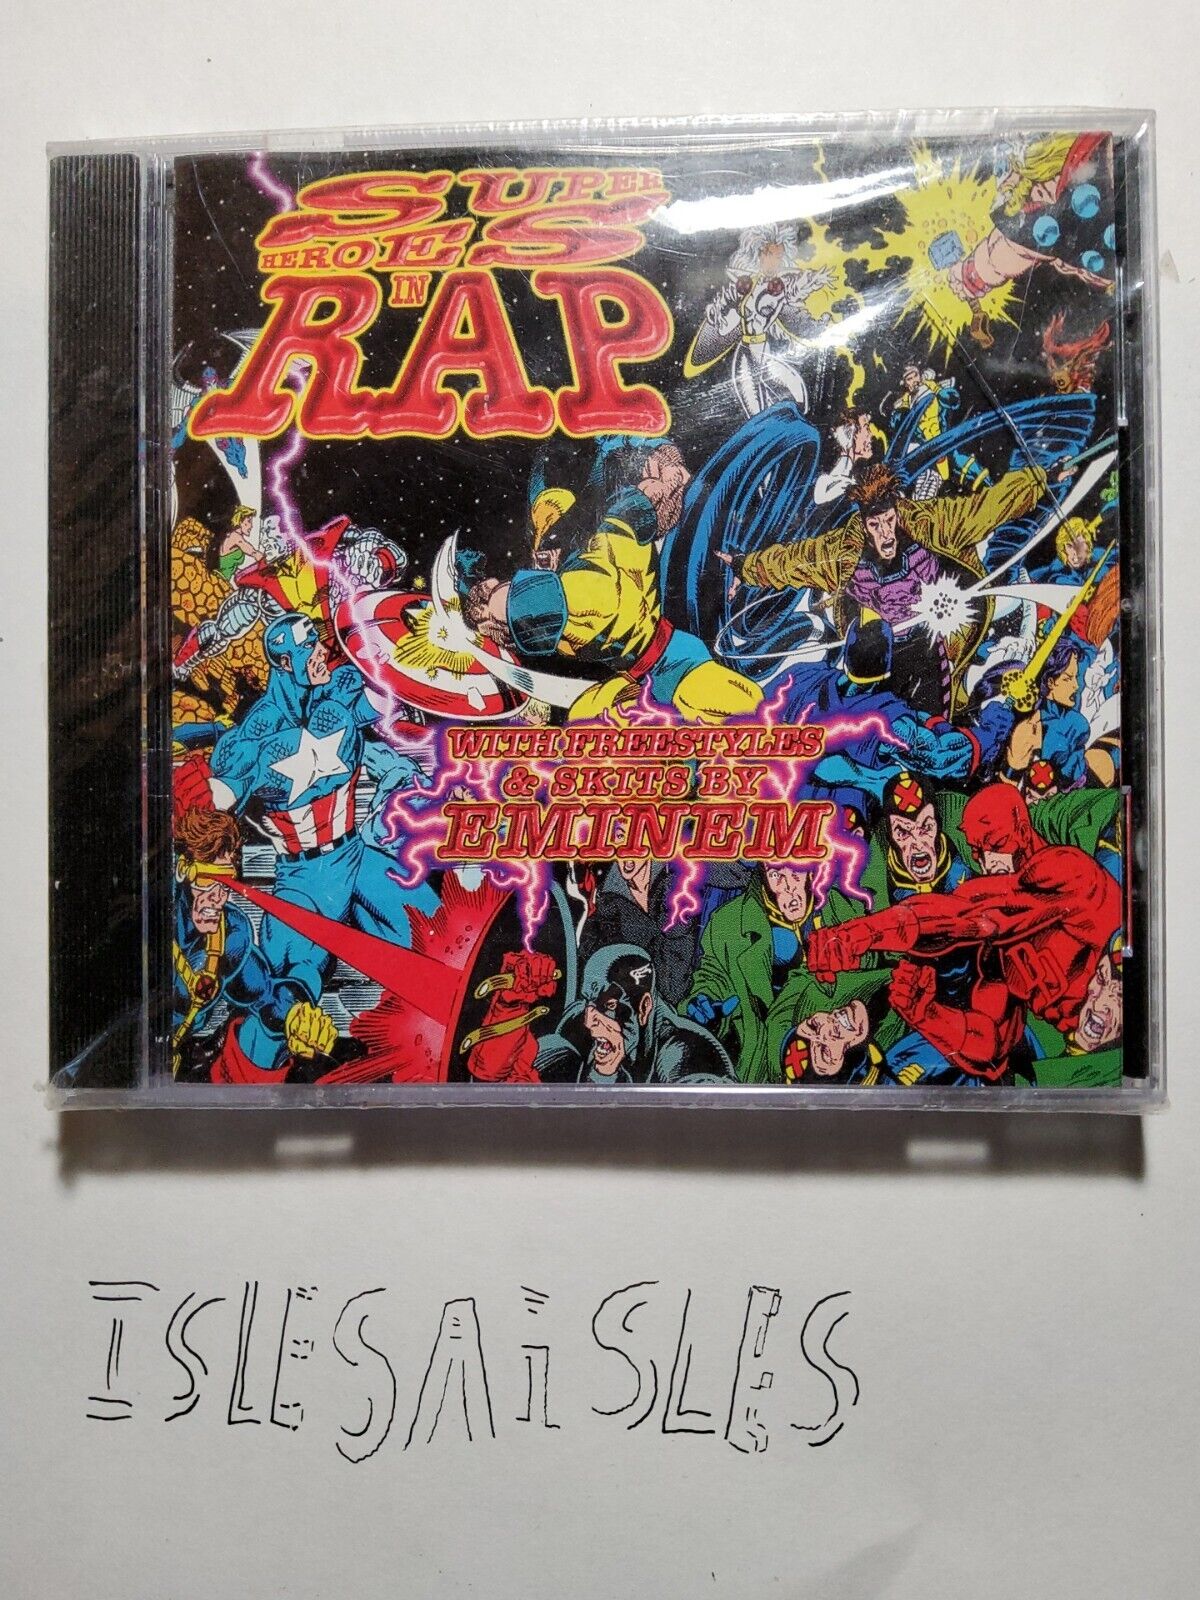 EMINEM VERY RARE Sealed SUPER HEROES IN RAP QUIET AS KEPT MIXTAPE CD 1999